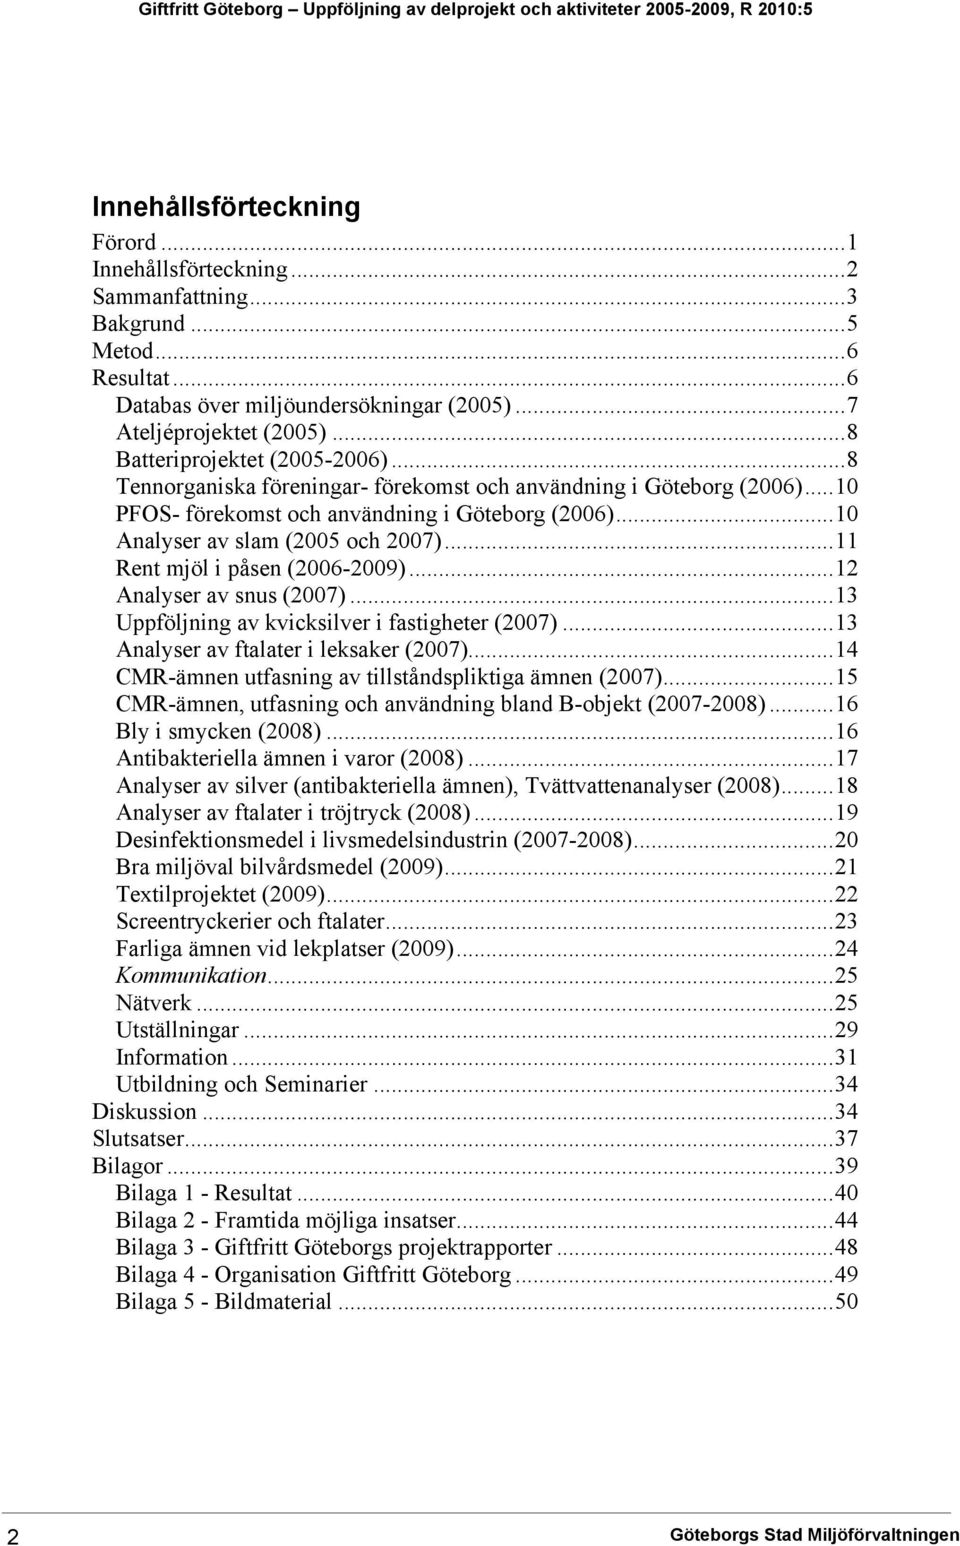 ..10 PFOS- förekomst och användning i Göteborg (2006)...10 Analyser av slam (2005 och 2007)...11 Rent mjöl i påsen (2006-2009)...12 Analyser av snus (2007).